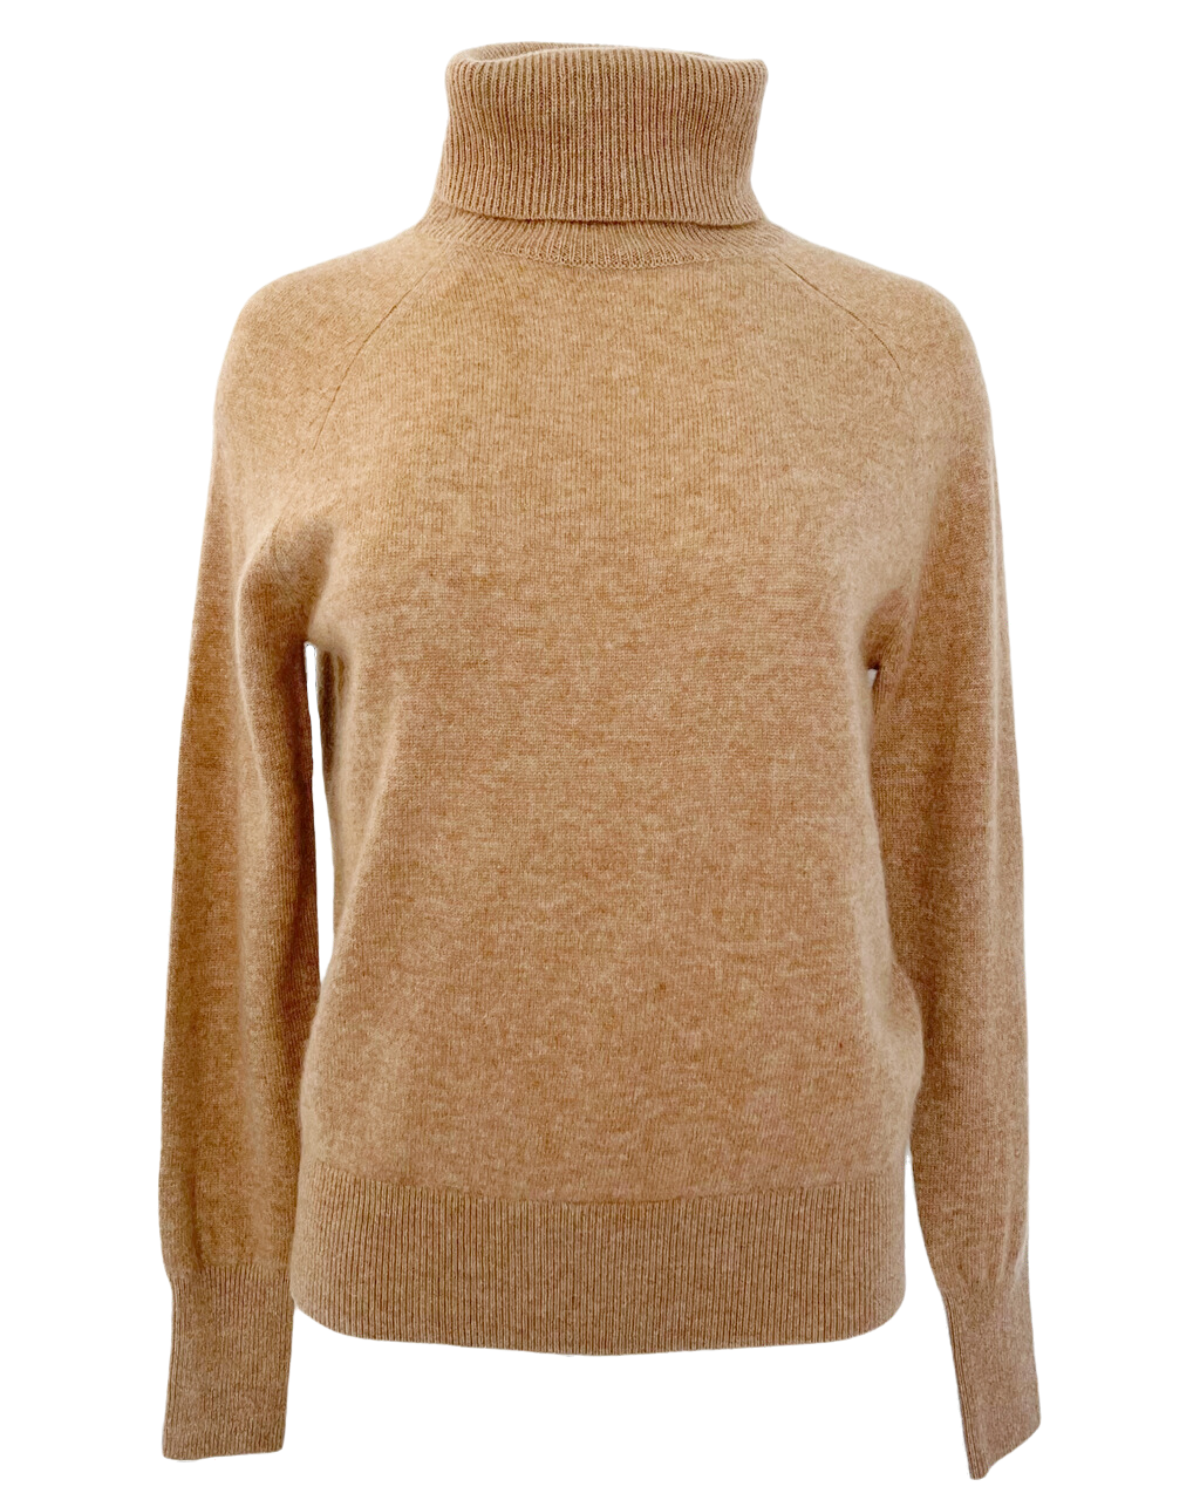 Cashmere Essential Turtleneck Sweater (Camel Heather)